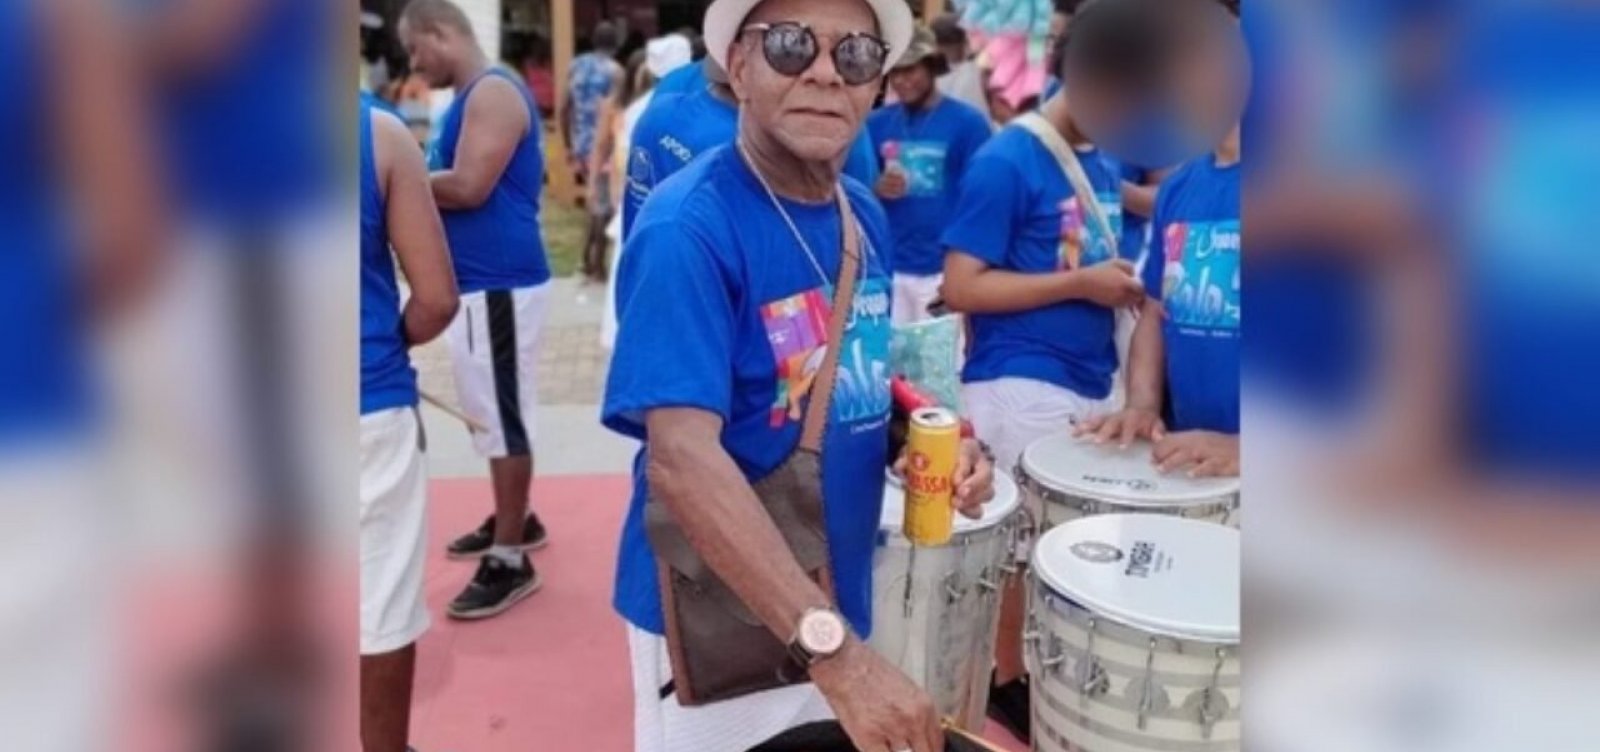 Enterro festivo de Mestre Bala, em Cachoeira, chama atenção nas redes sociais 